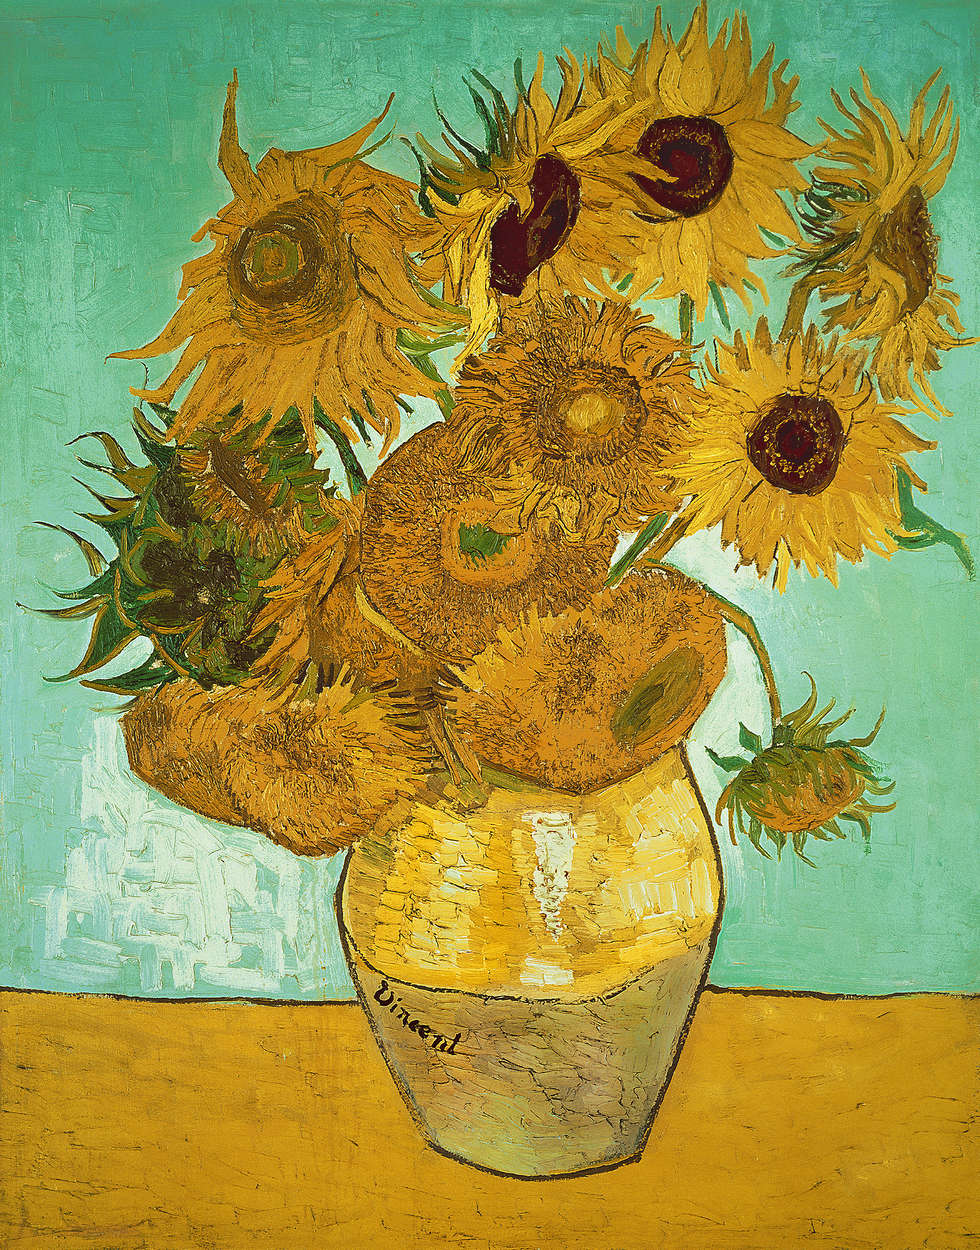             Mural "Girasoles" de Vincent van Gogh
        